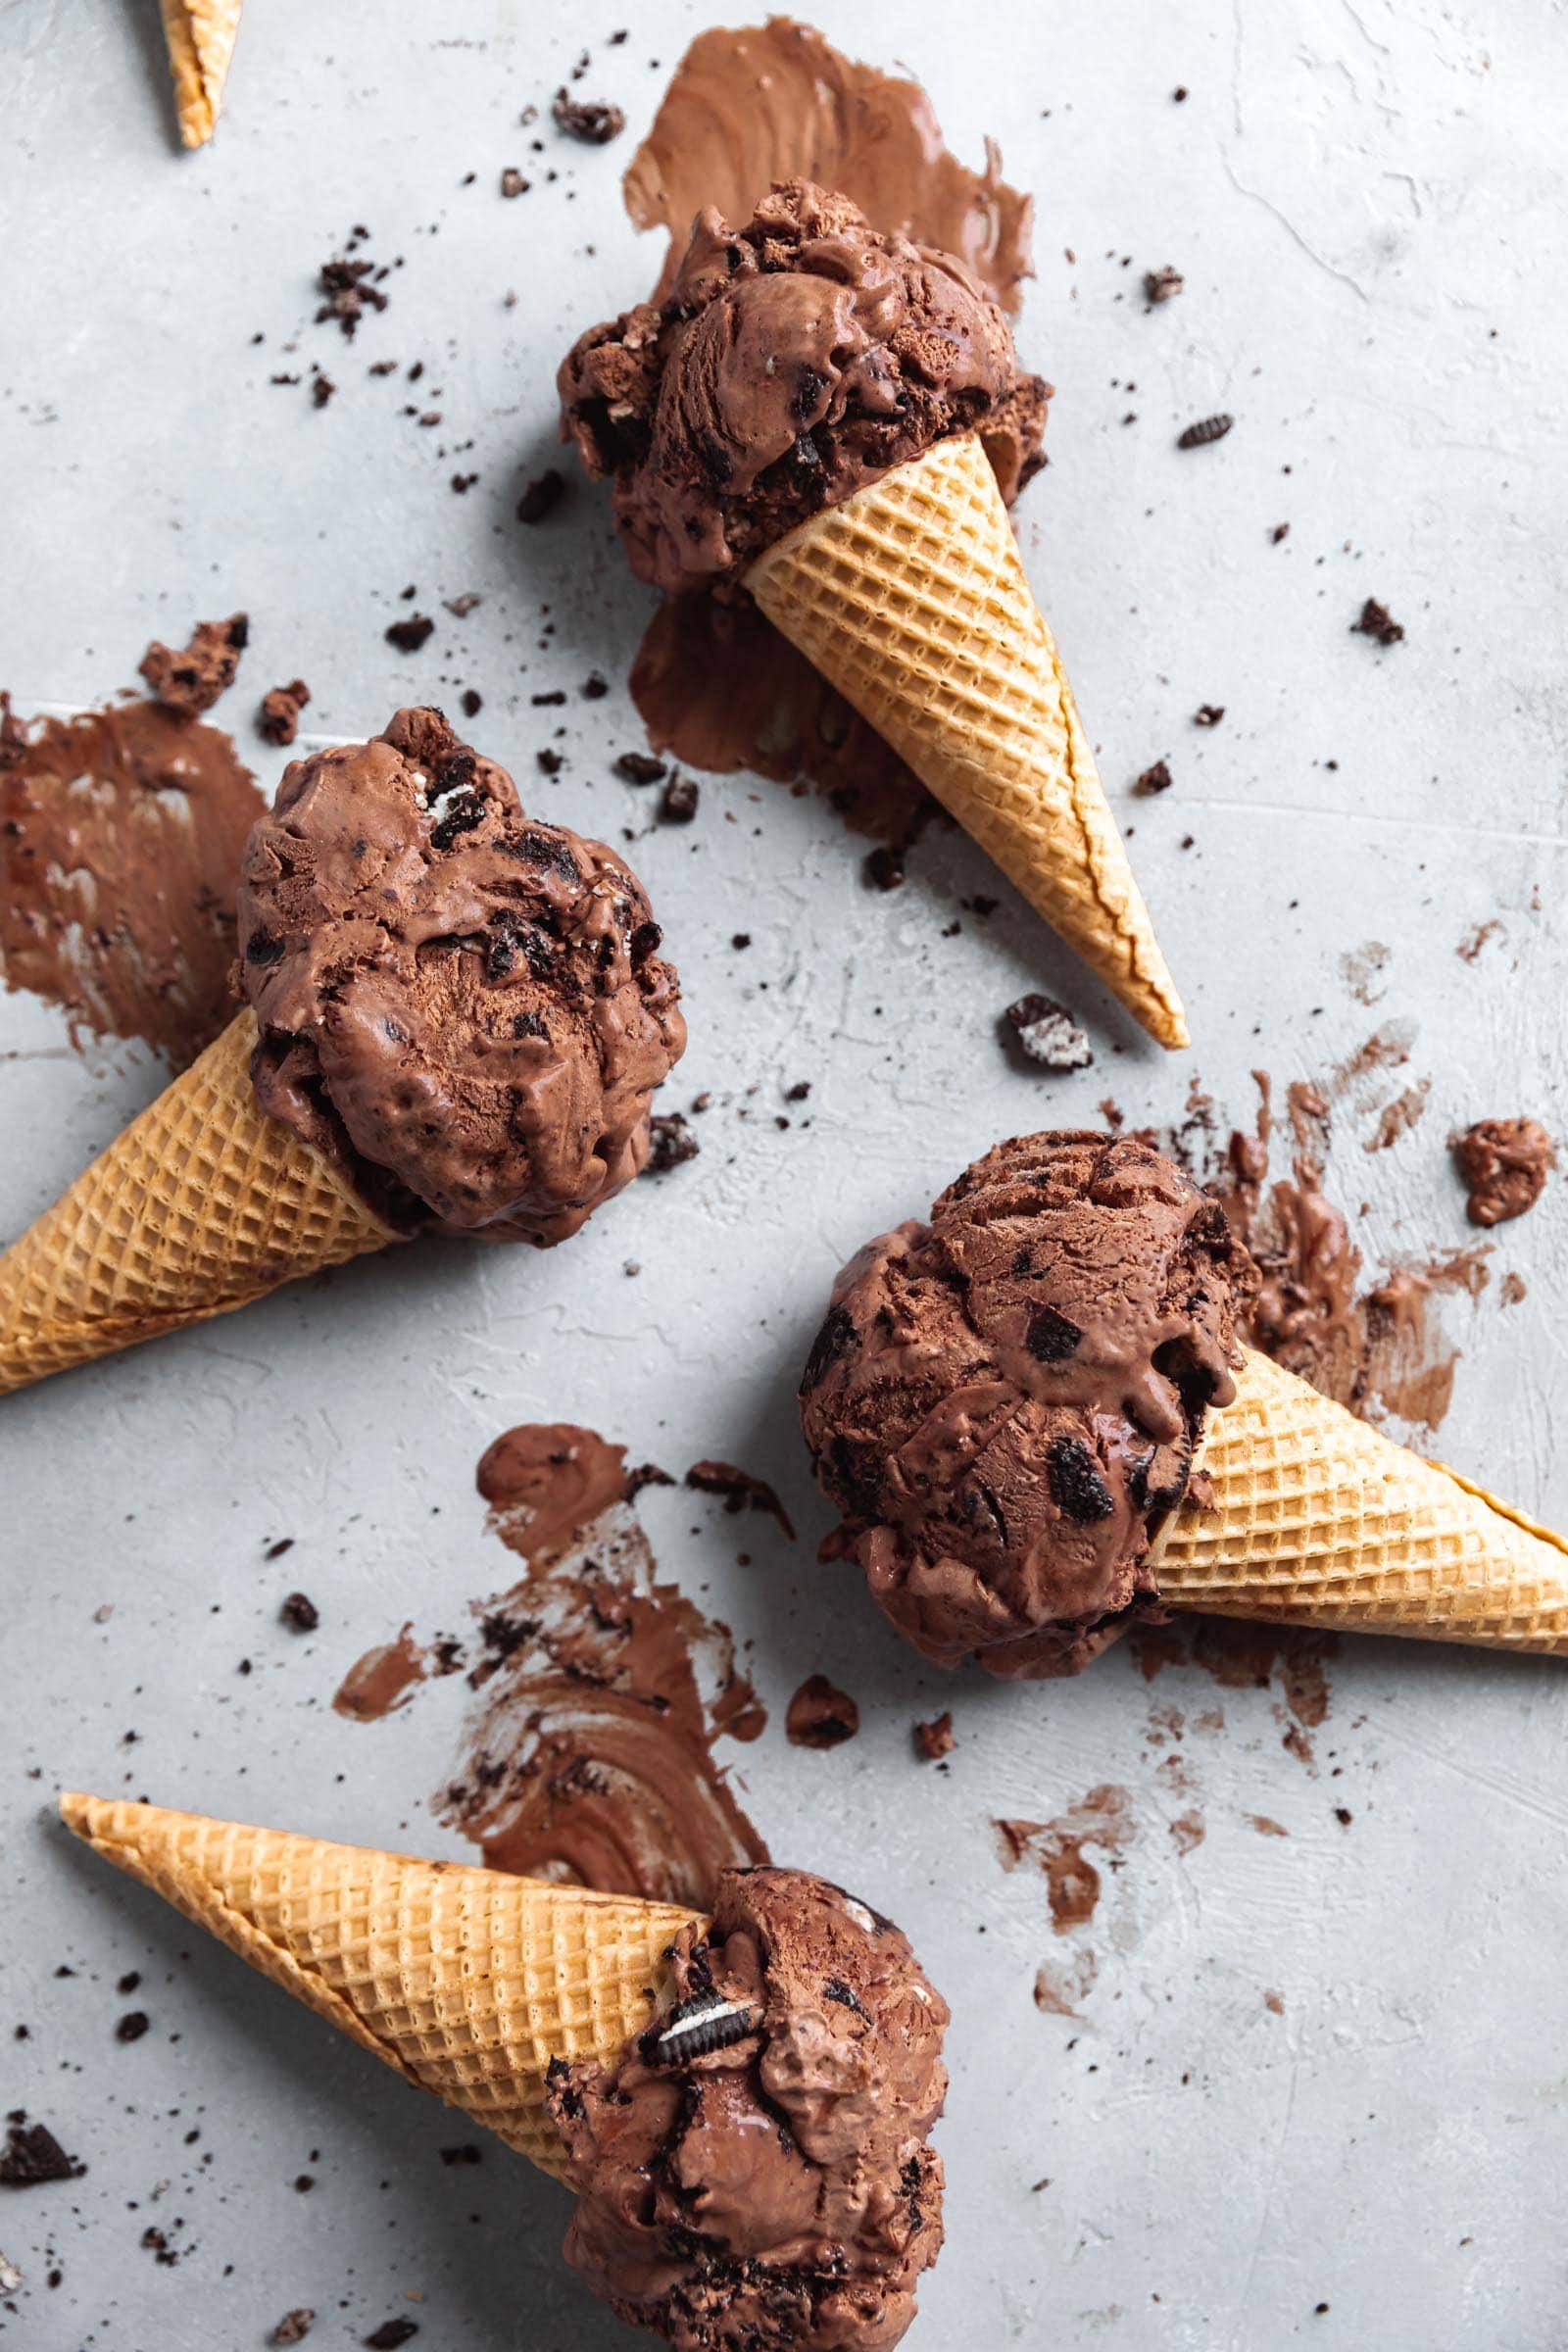 Chocolate Ice Cream Recipe How To Make Eggless Choco Ice Cream